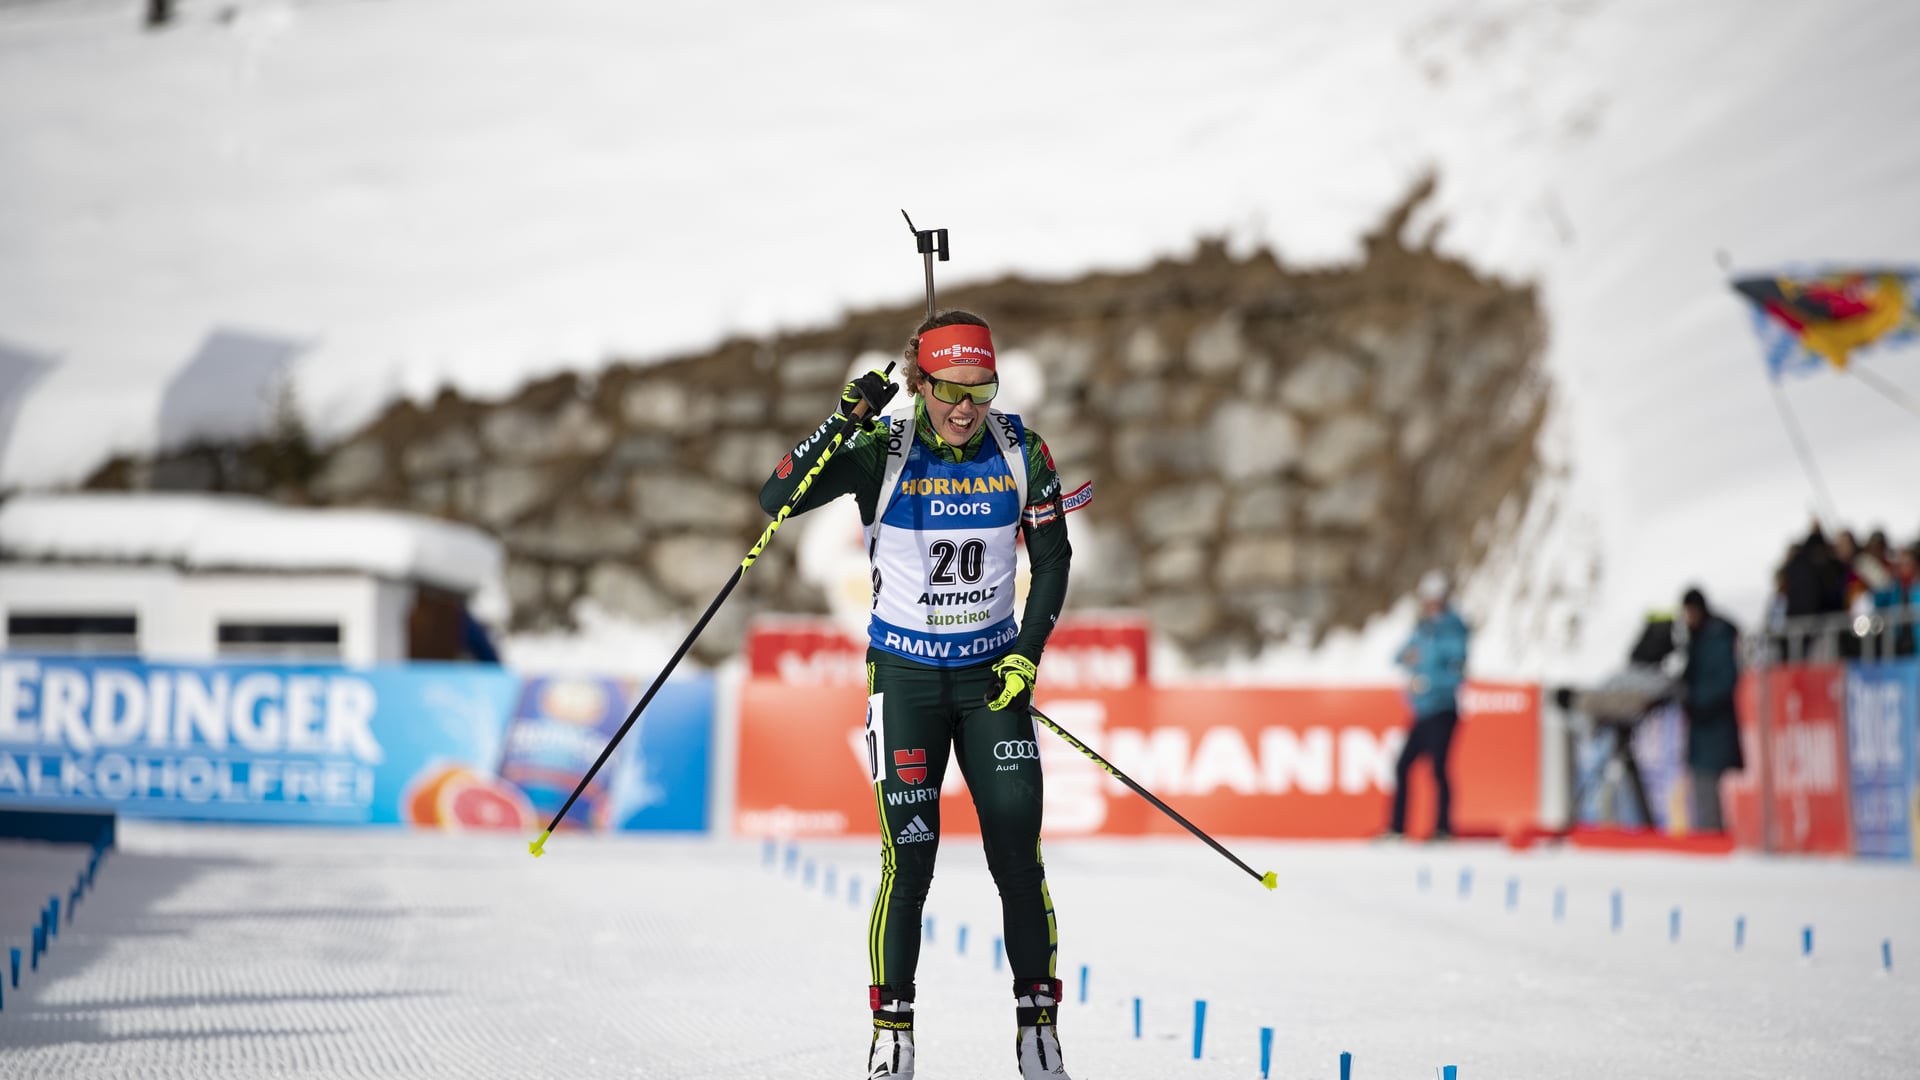 27.01.2019 - Laura Dahlmeier wins mass start in Anterselva